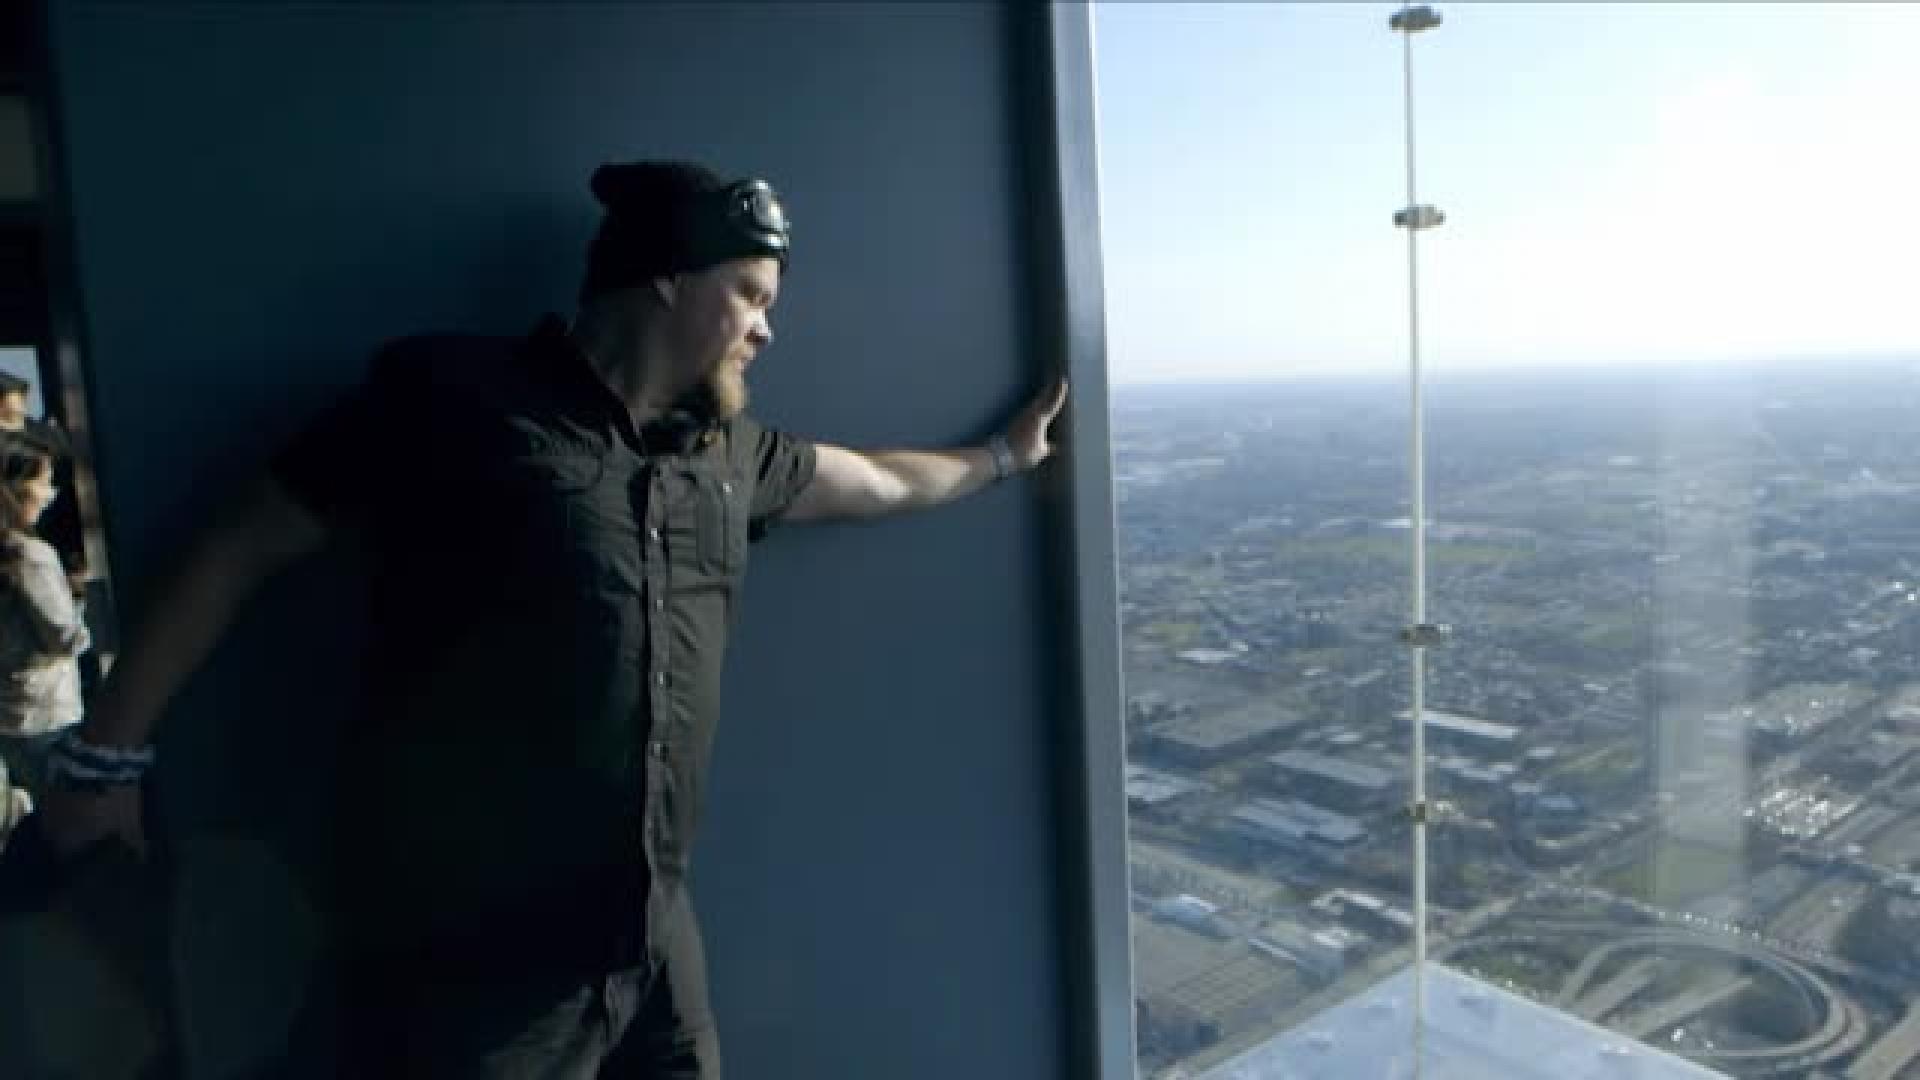 "Olen tunnettu korkean paikan kammostani!" Katso miten Ville Haapasalo toimi Chicagon korkeimmassa pilvenpiirtäjässä